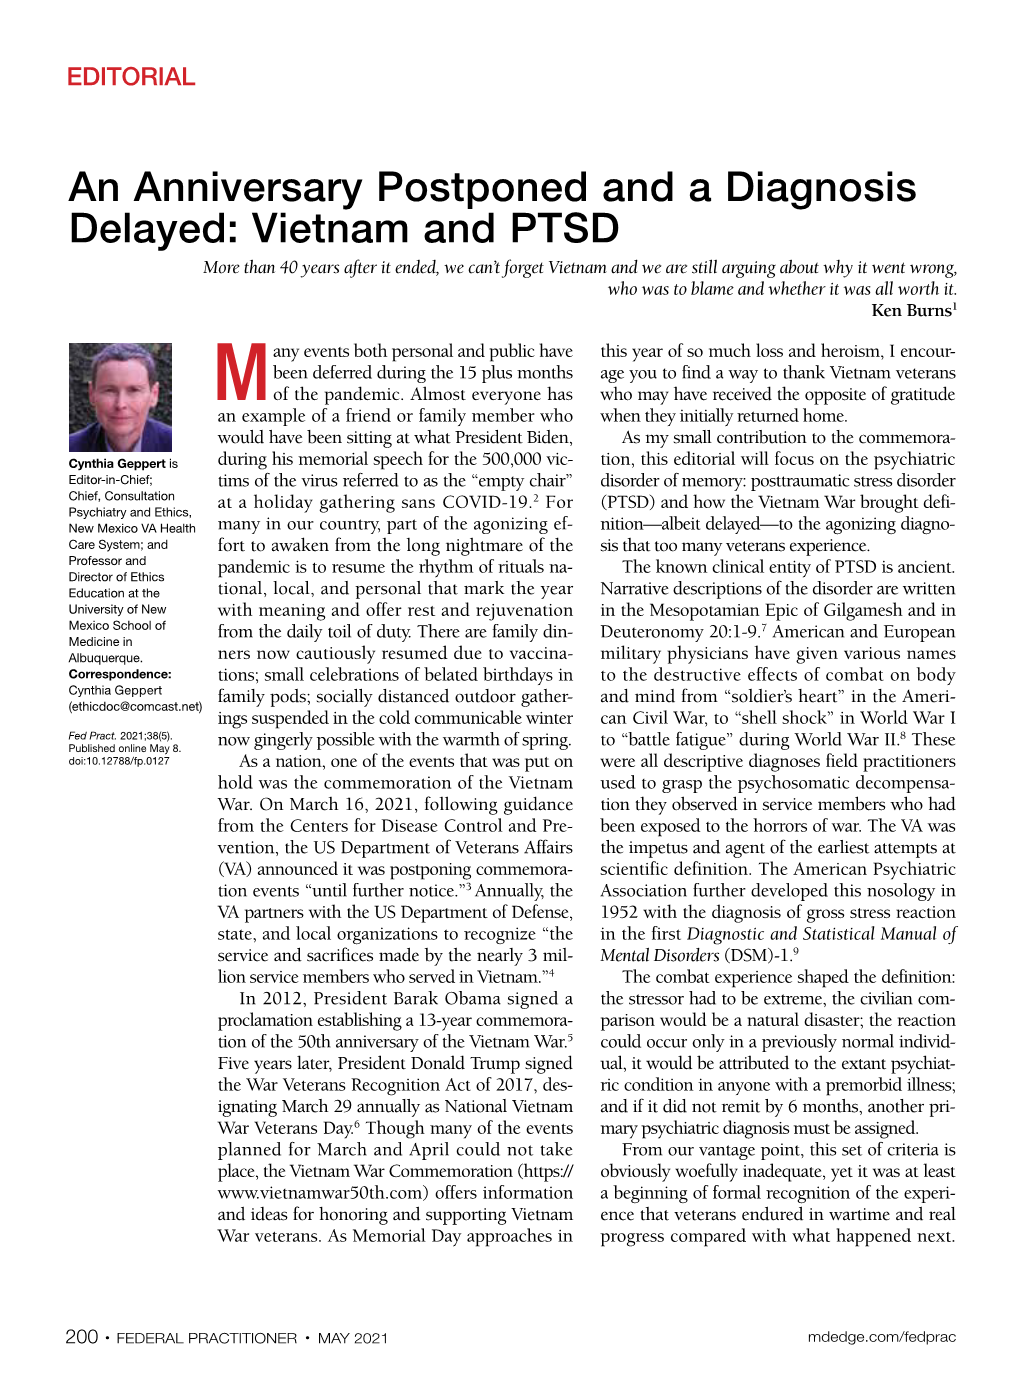 Vietnam and PTSD